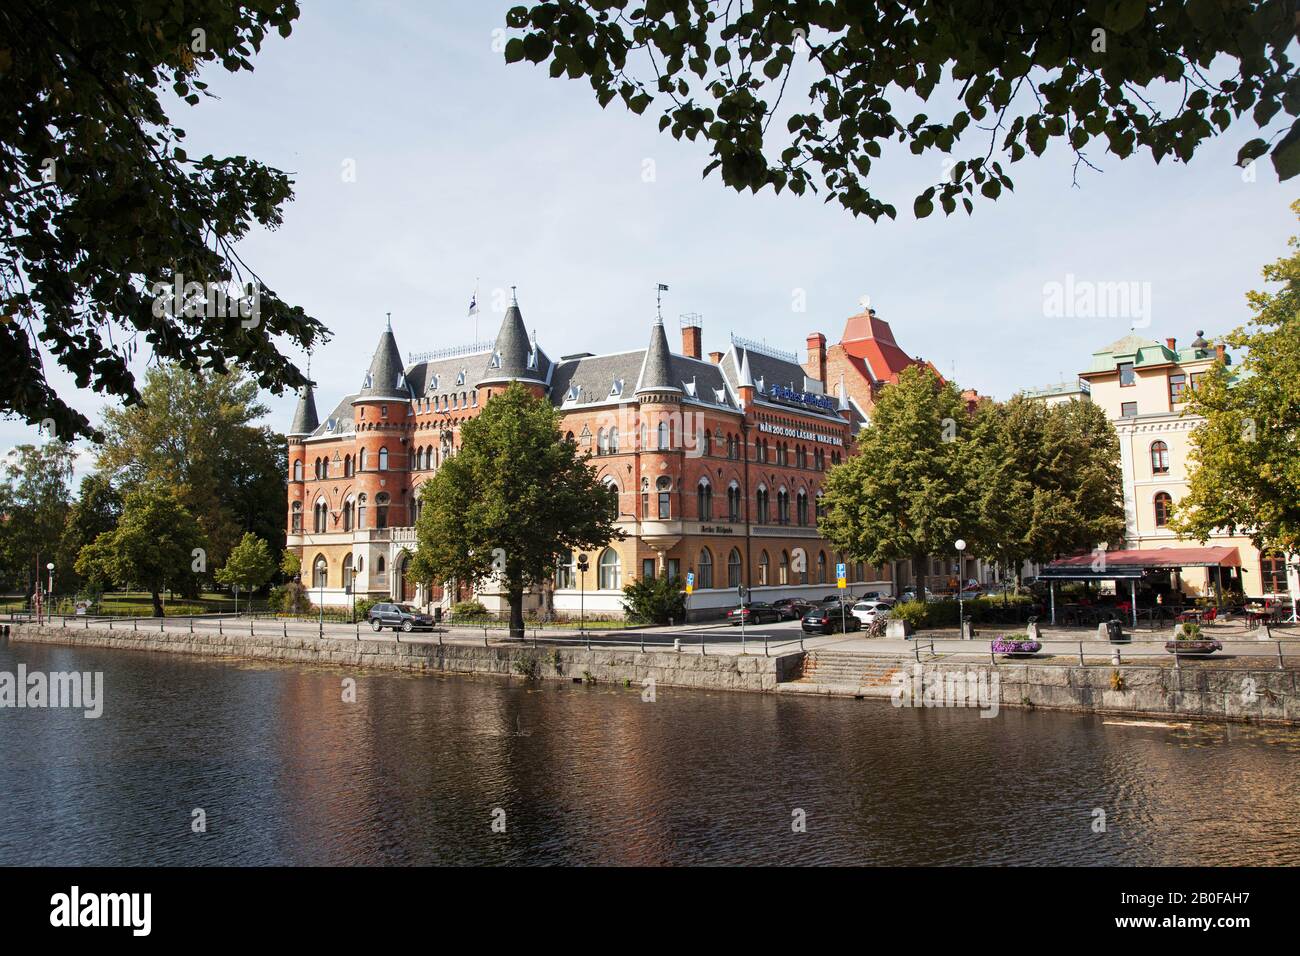 Na-borgen in der Stadt Örebro. 80 Jahre lang gab es in "Borgen" Nerikes Allehandas Redaktion, jetzt wird es ein Hotel sein.Foto Jeppe Gustafsson Stockfoto